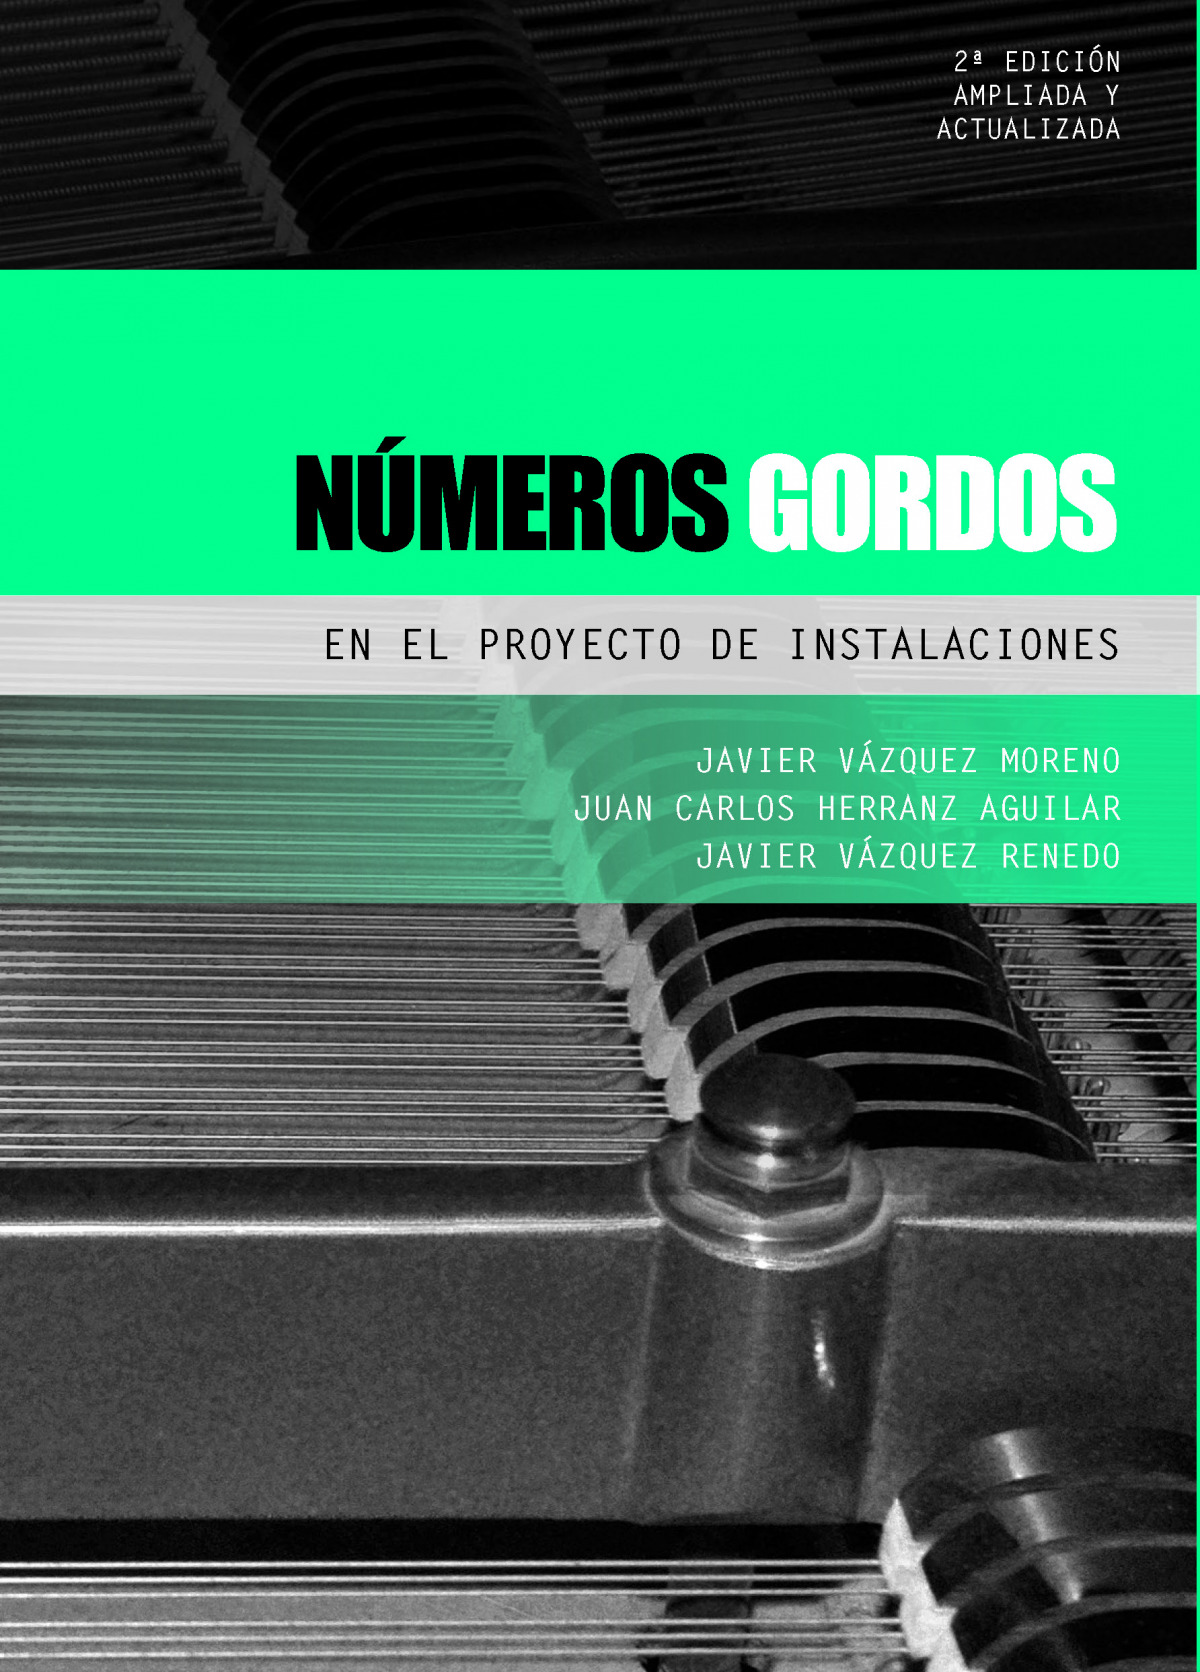 Números gordos en el proyecto de instalaciones / Javier Vázquez Moreno, Juan Carlos Herranz Aguilar, Javier Vázquez Renedo